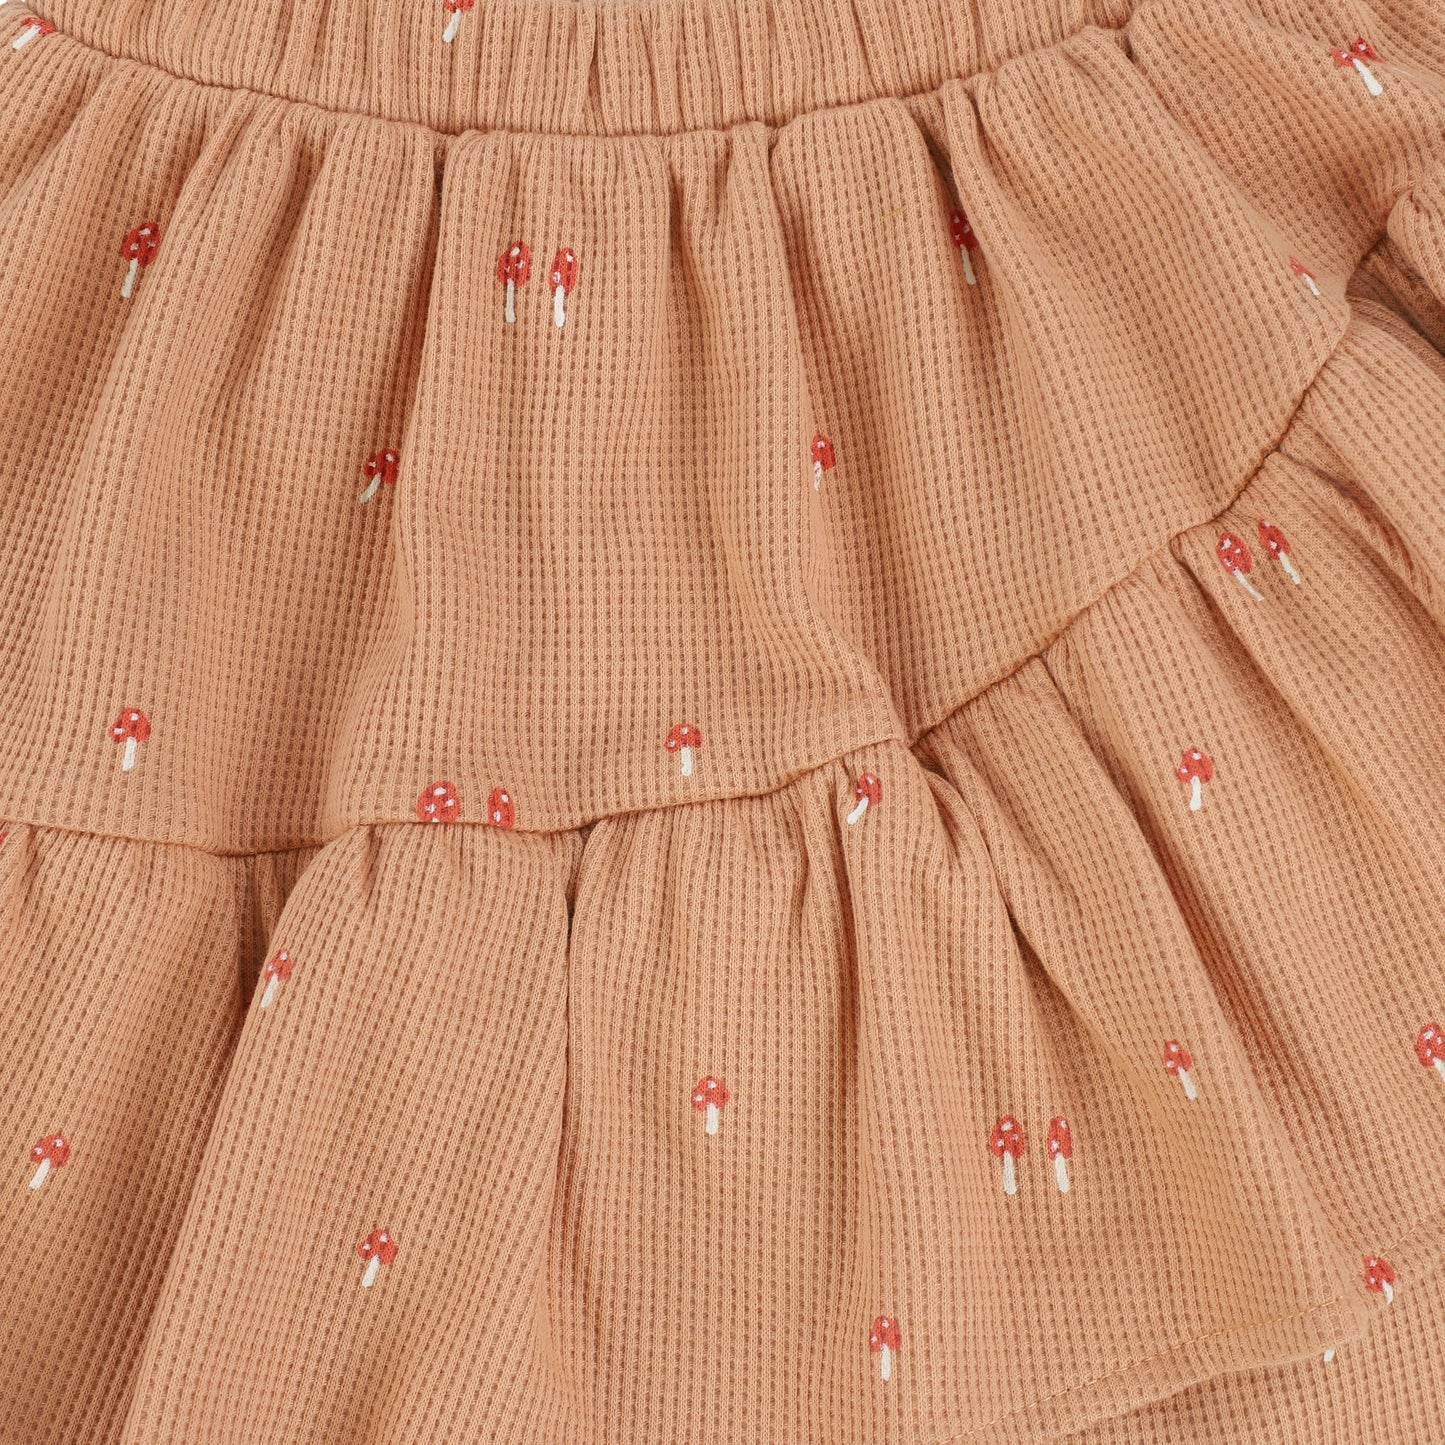 A Monday Peach Mushroom Print Diagonal Ruffle Skirt [Final Sale]